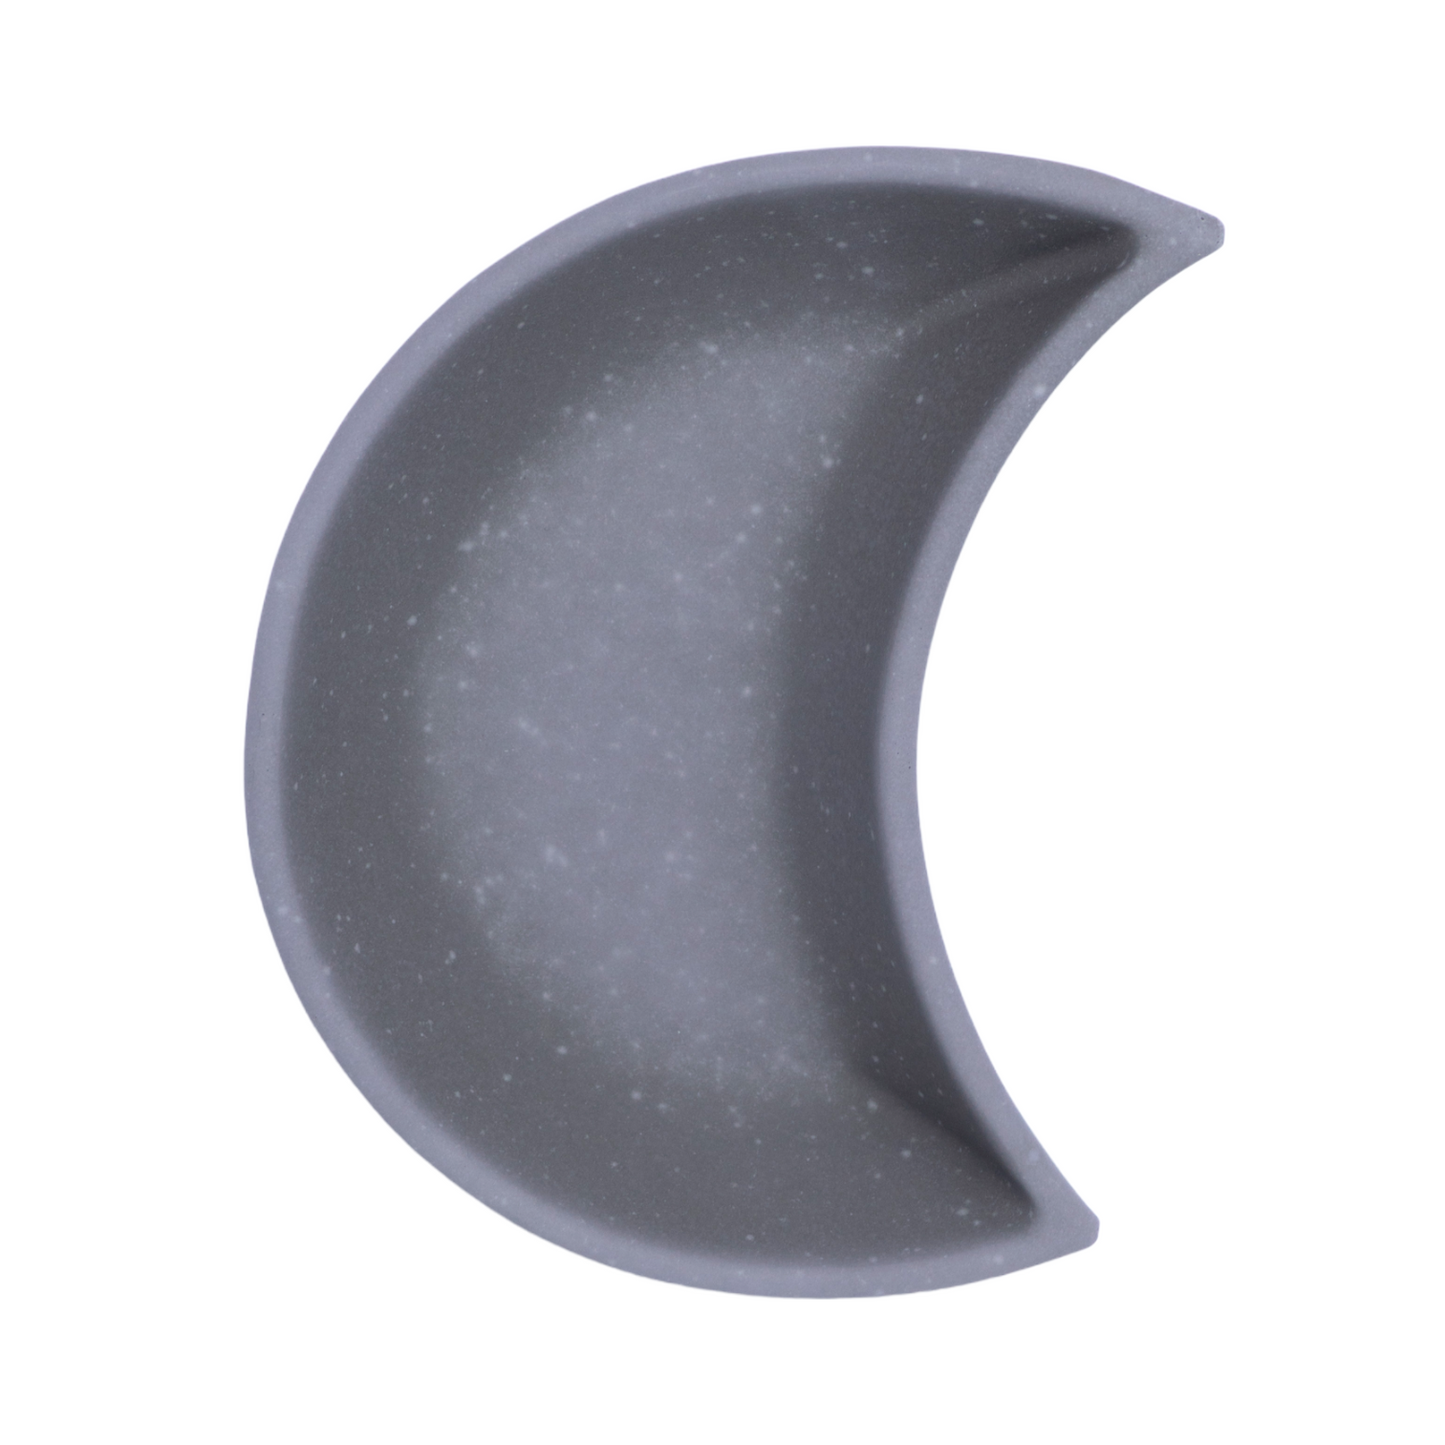 Crescent Moon Tray